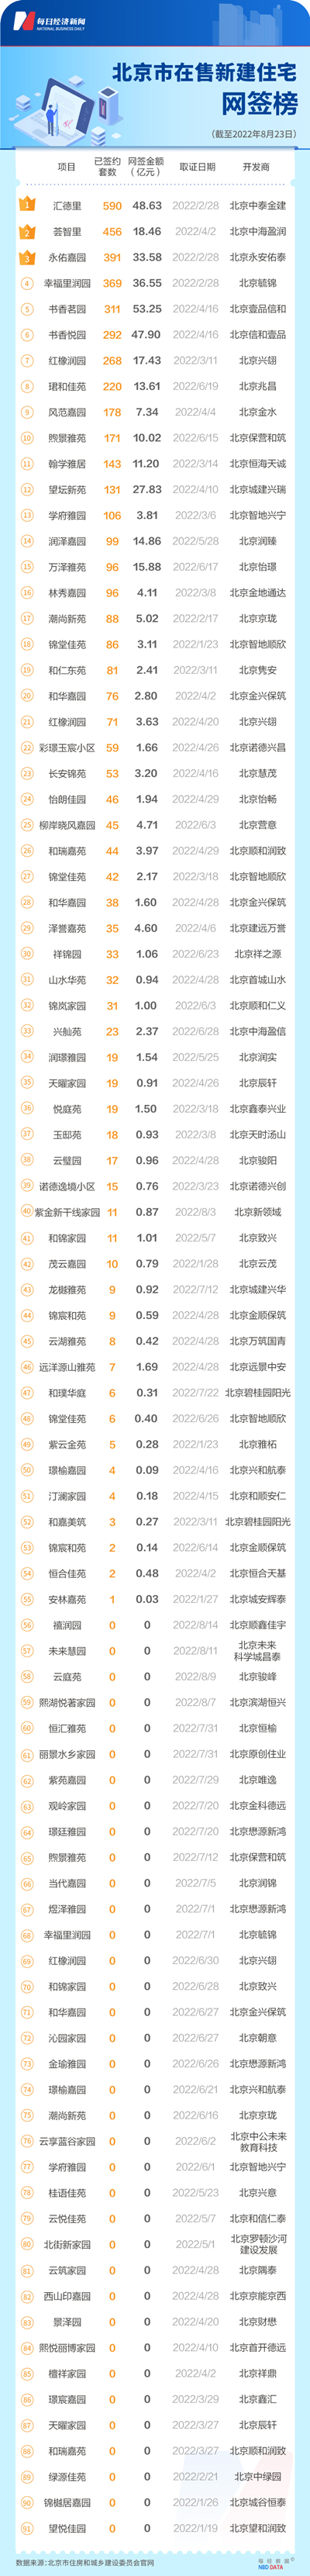 今年北京36个项目网签为零 13个项目网签套数在10套以下